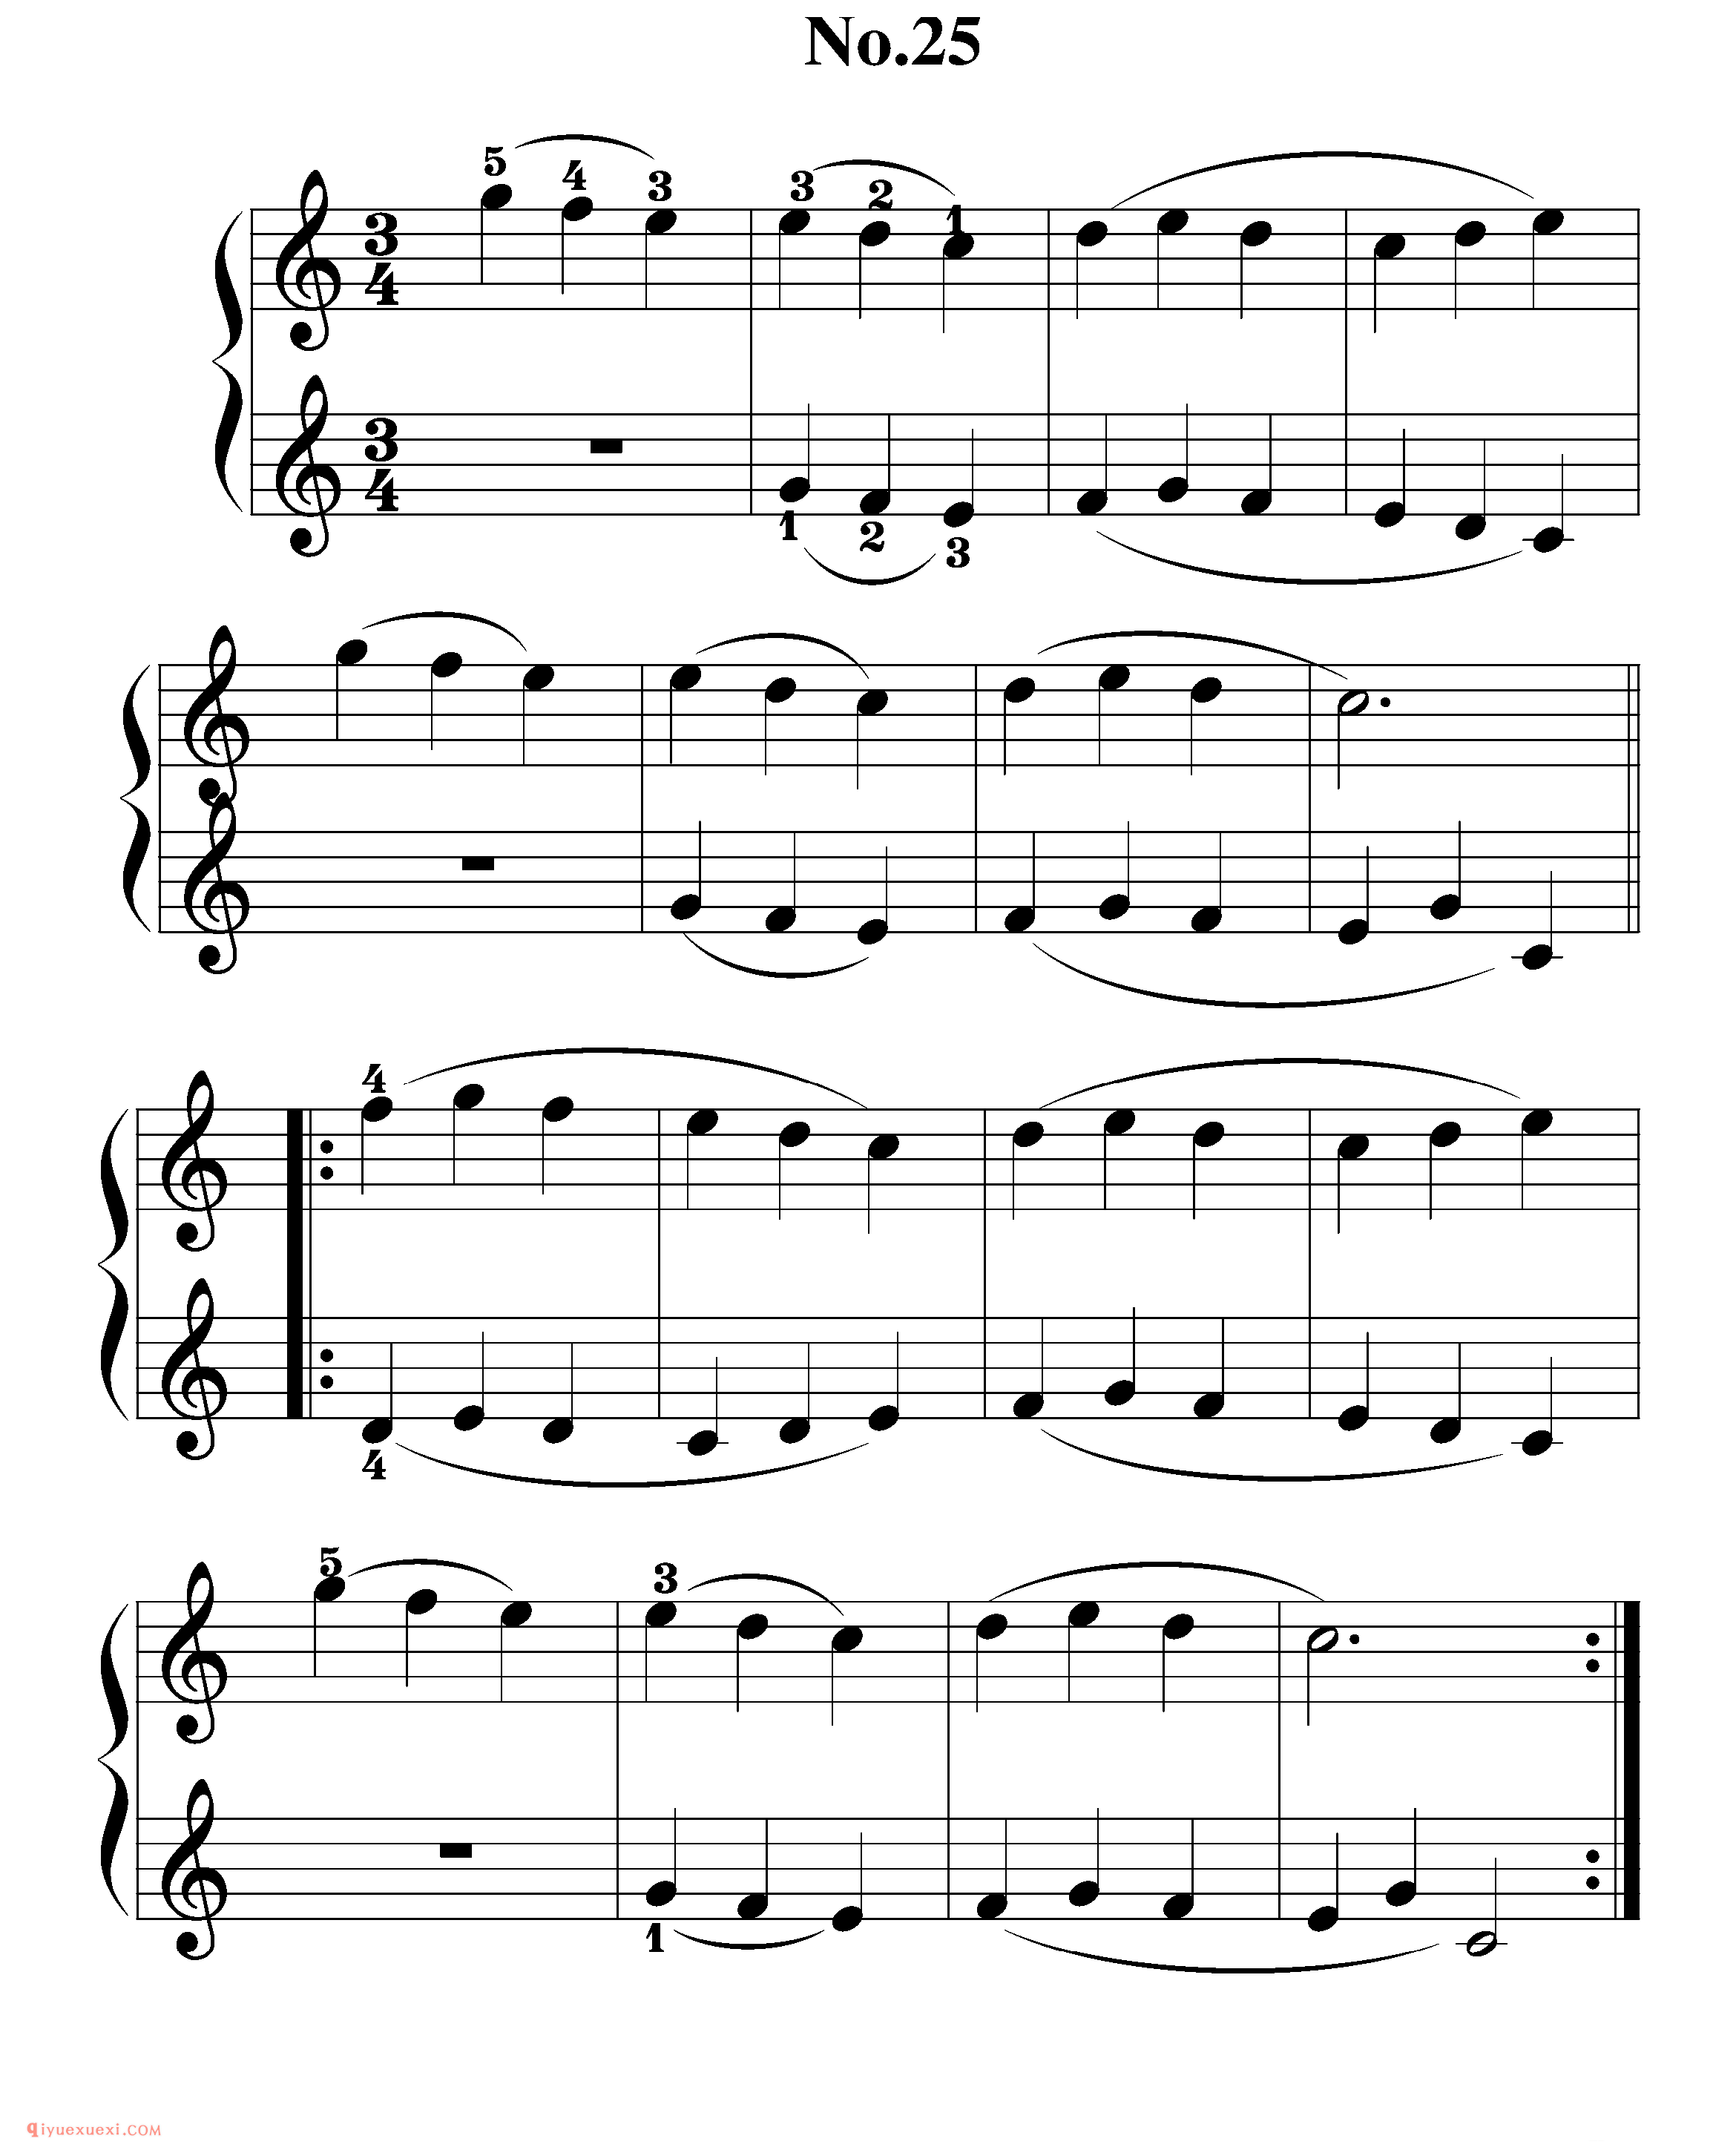 拜厄钢琴练习曲NO.25_拜尔(拜厄)钢琴基本教程练习曲第25首_五线谱